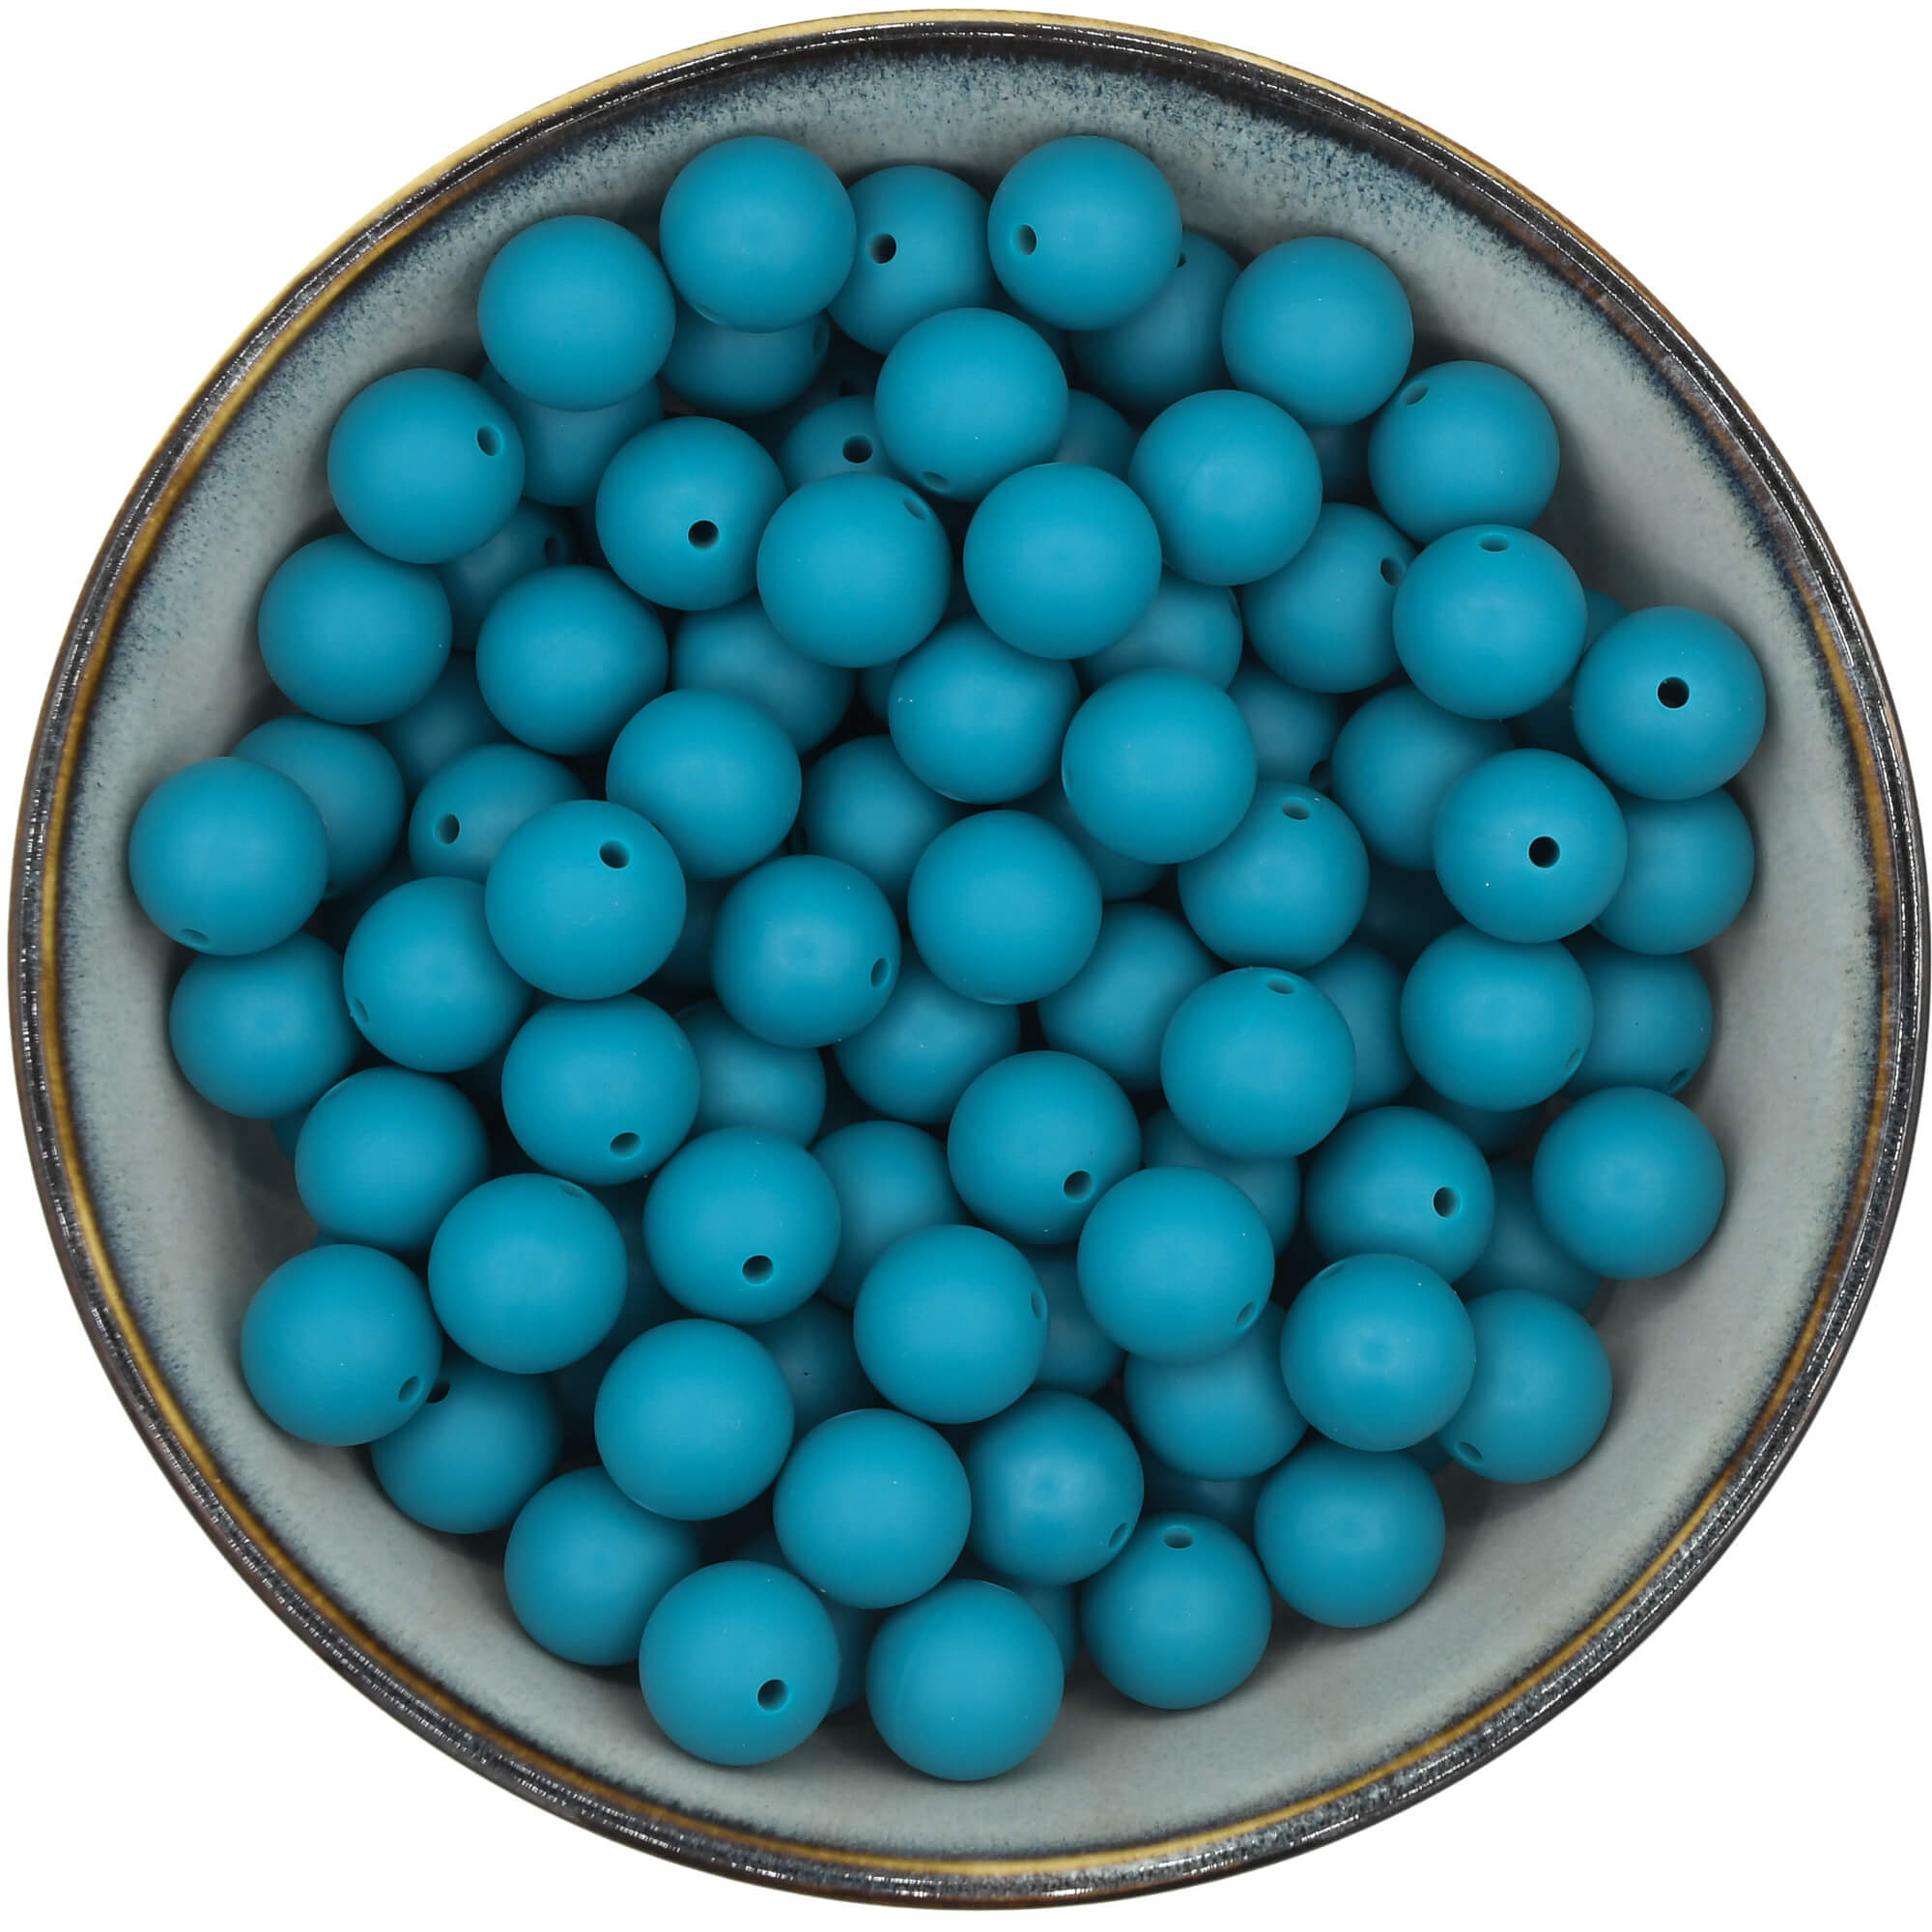 Ronde siliconen kraal van 15 mm in de kleur Teal